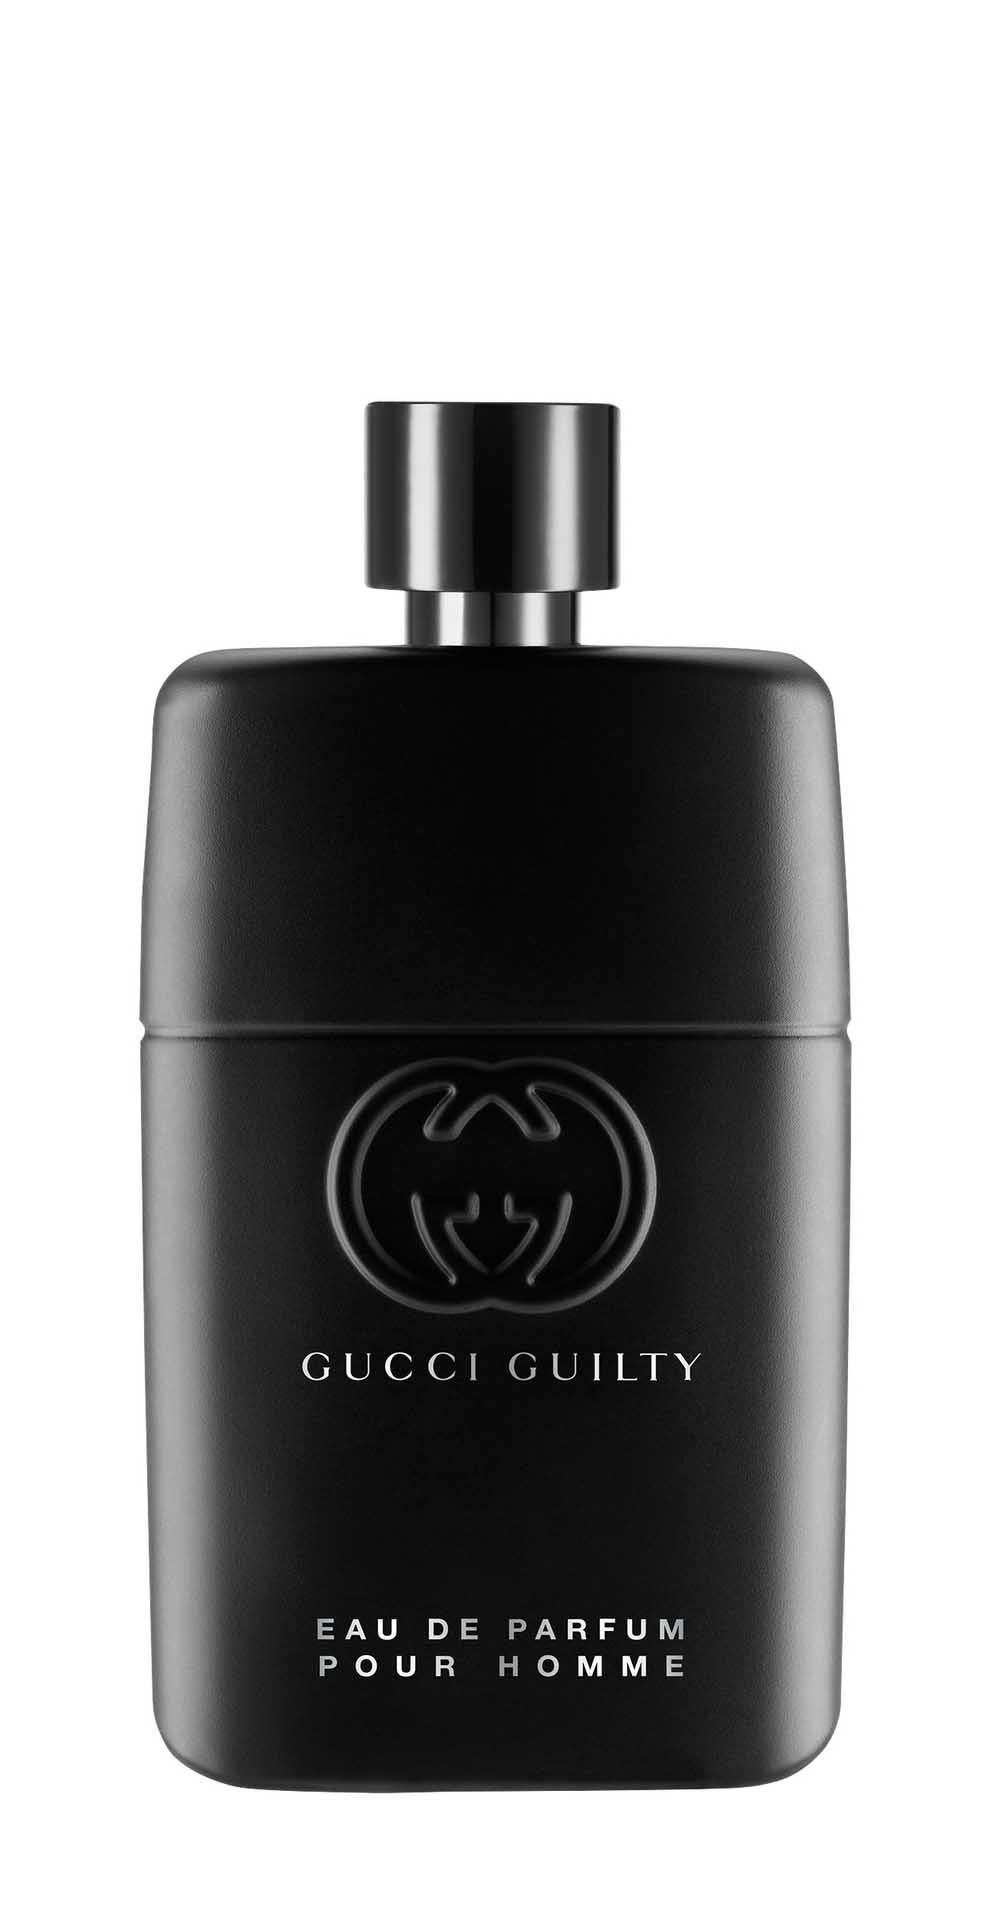 Парфюмерная вода Gucci Guilty Pour Homme Eau de Parfum для мужчин, 90 мл boucheron pour homme eau de parfum 100